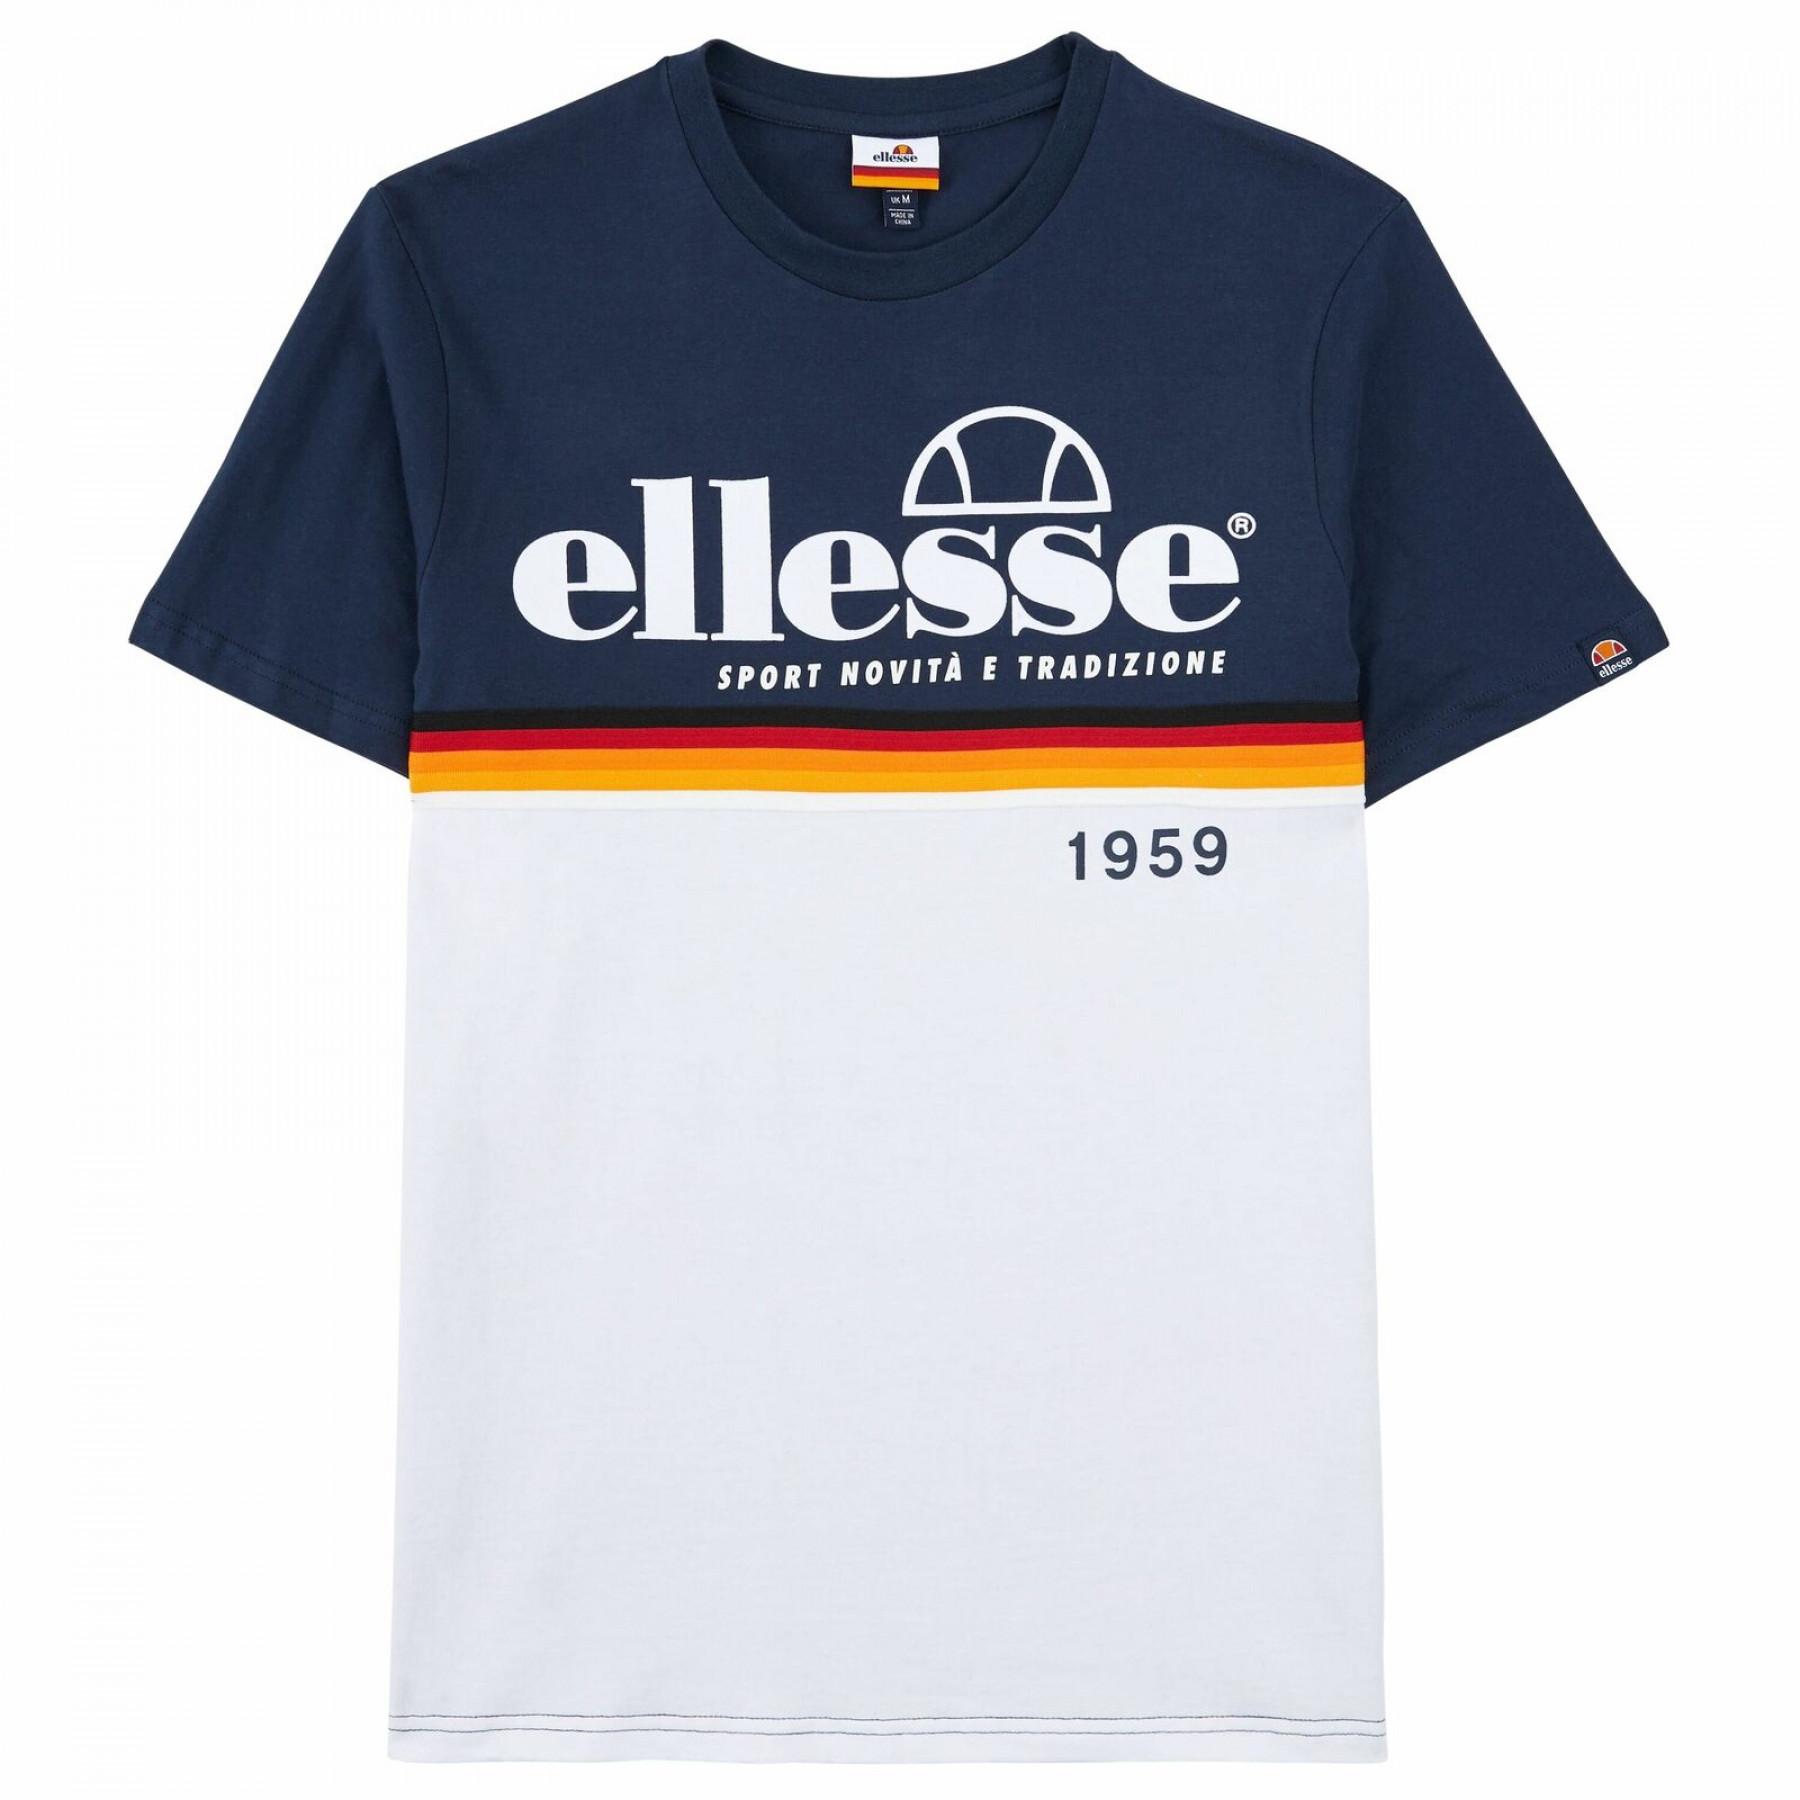 Camiseta Ellesse Brescia